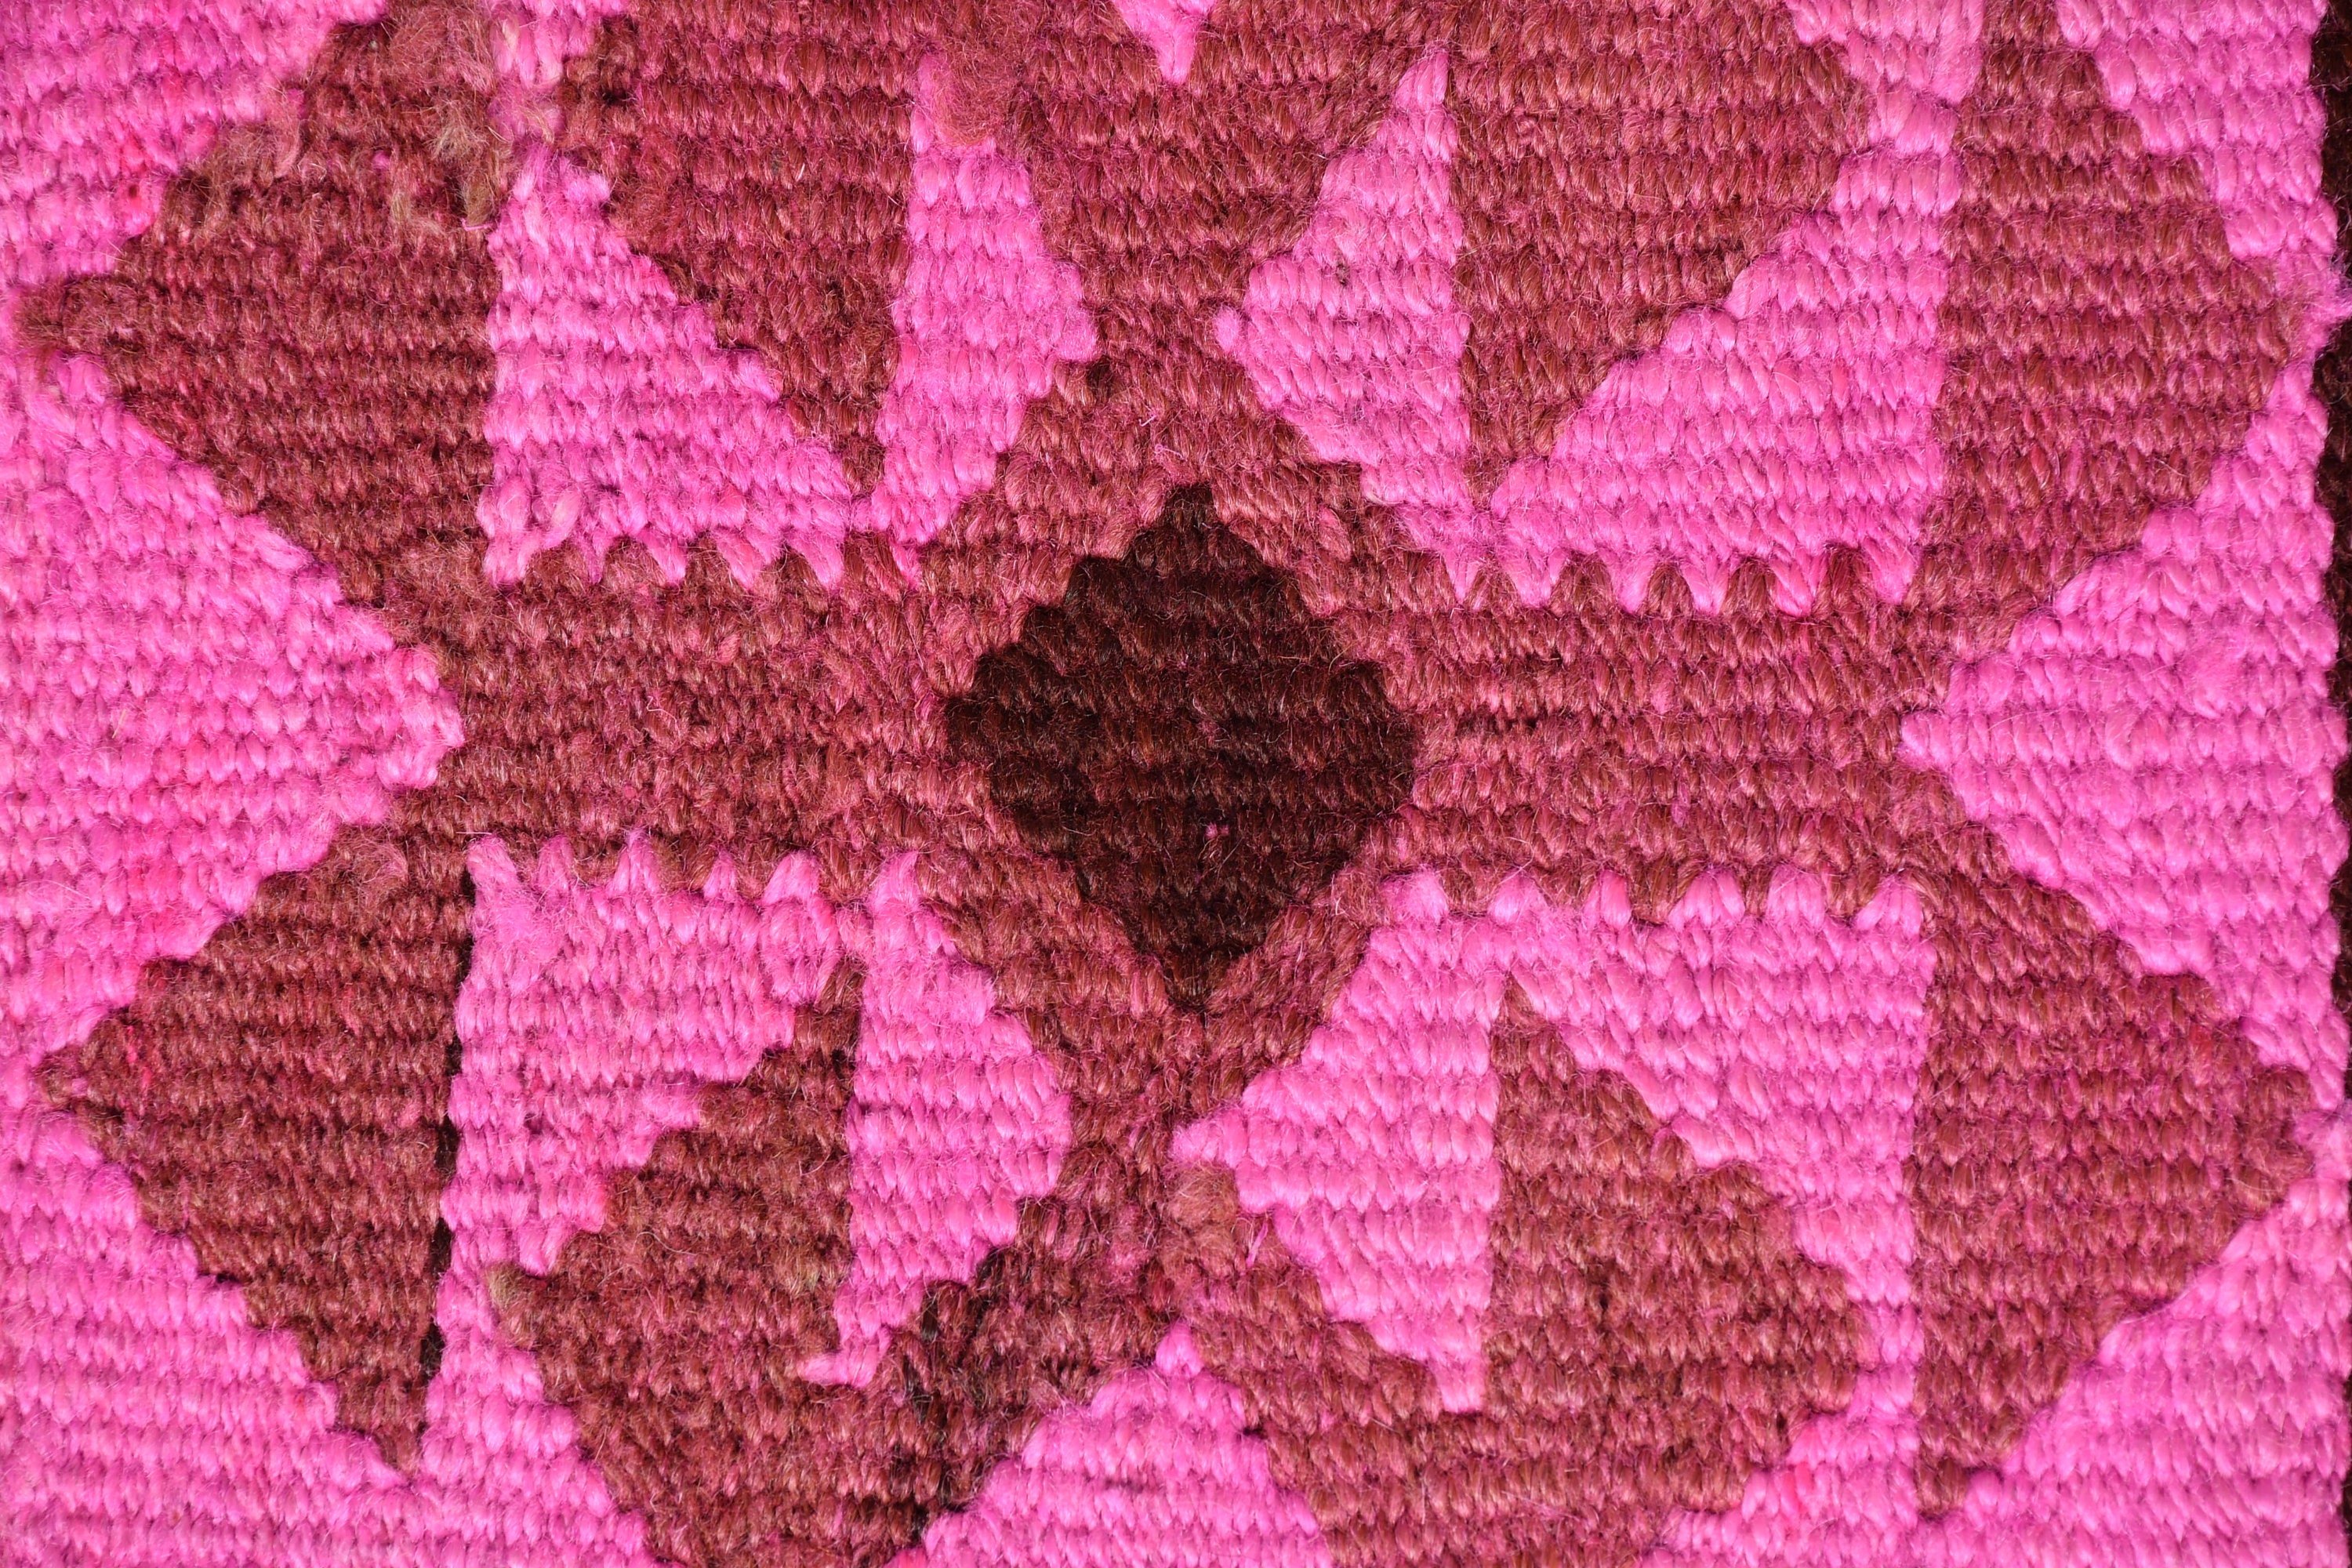 Pink Floor Rugs, Wool Rug, Cool Rugs, Art Rugs, Corridor Rug, Turkish Rug, 3.2x9.7 ft Runner Rug, Stair Rug, Rugs for Hallway, Vintage Rug